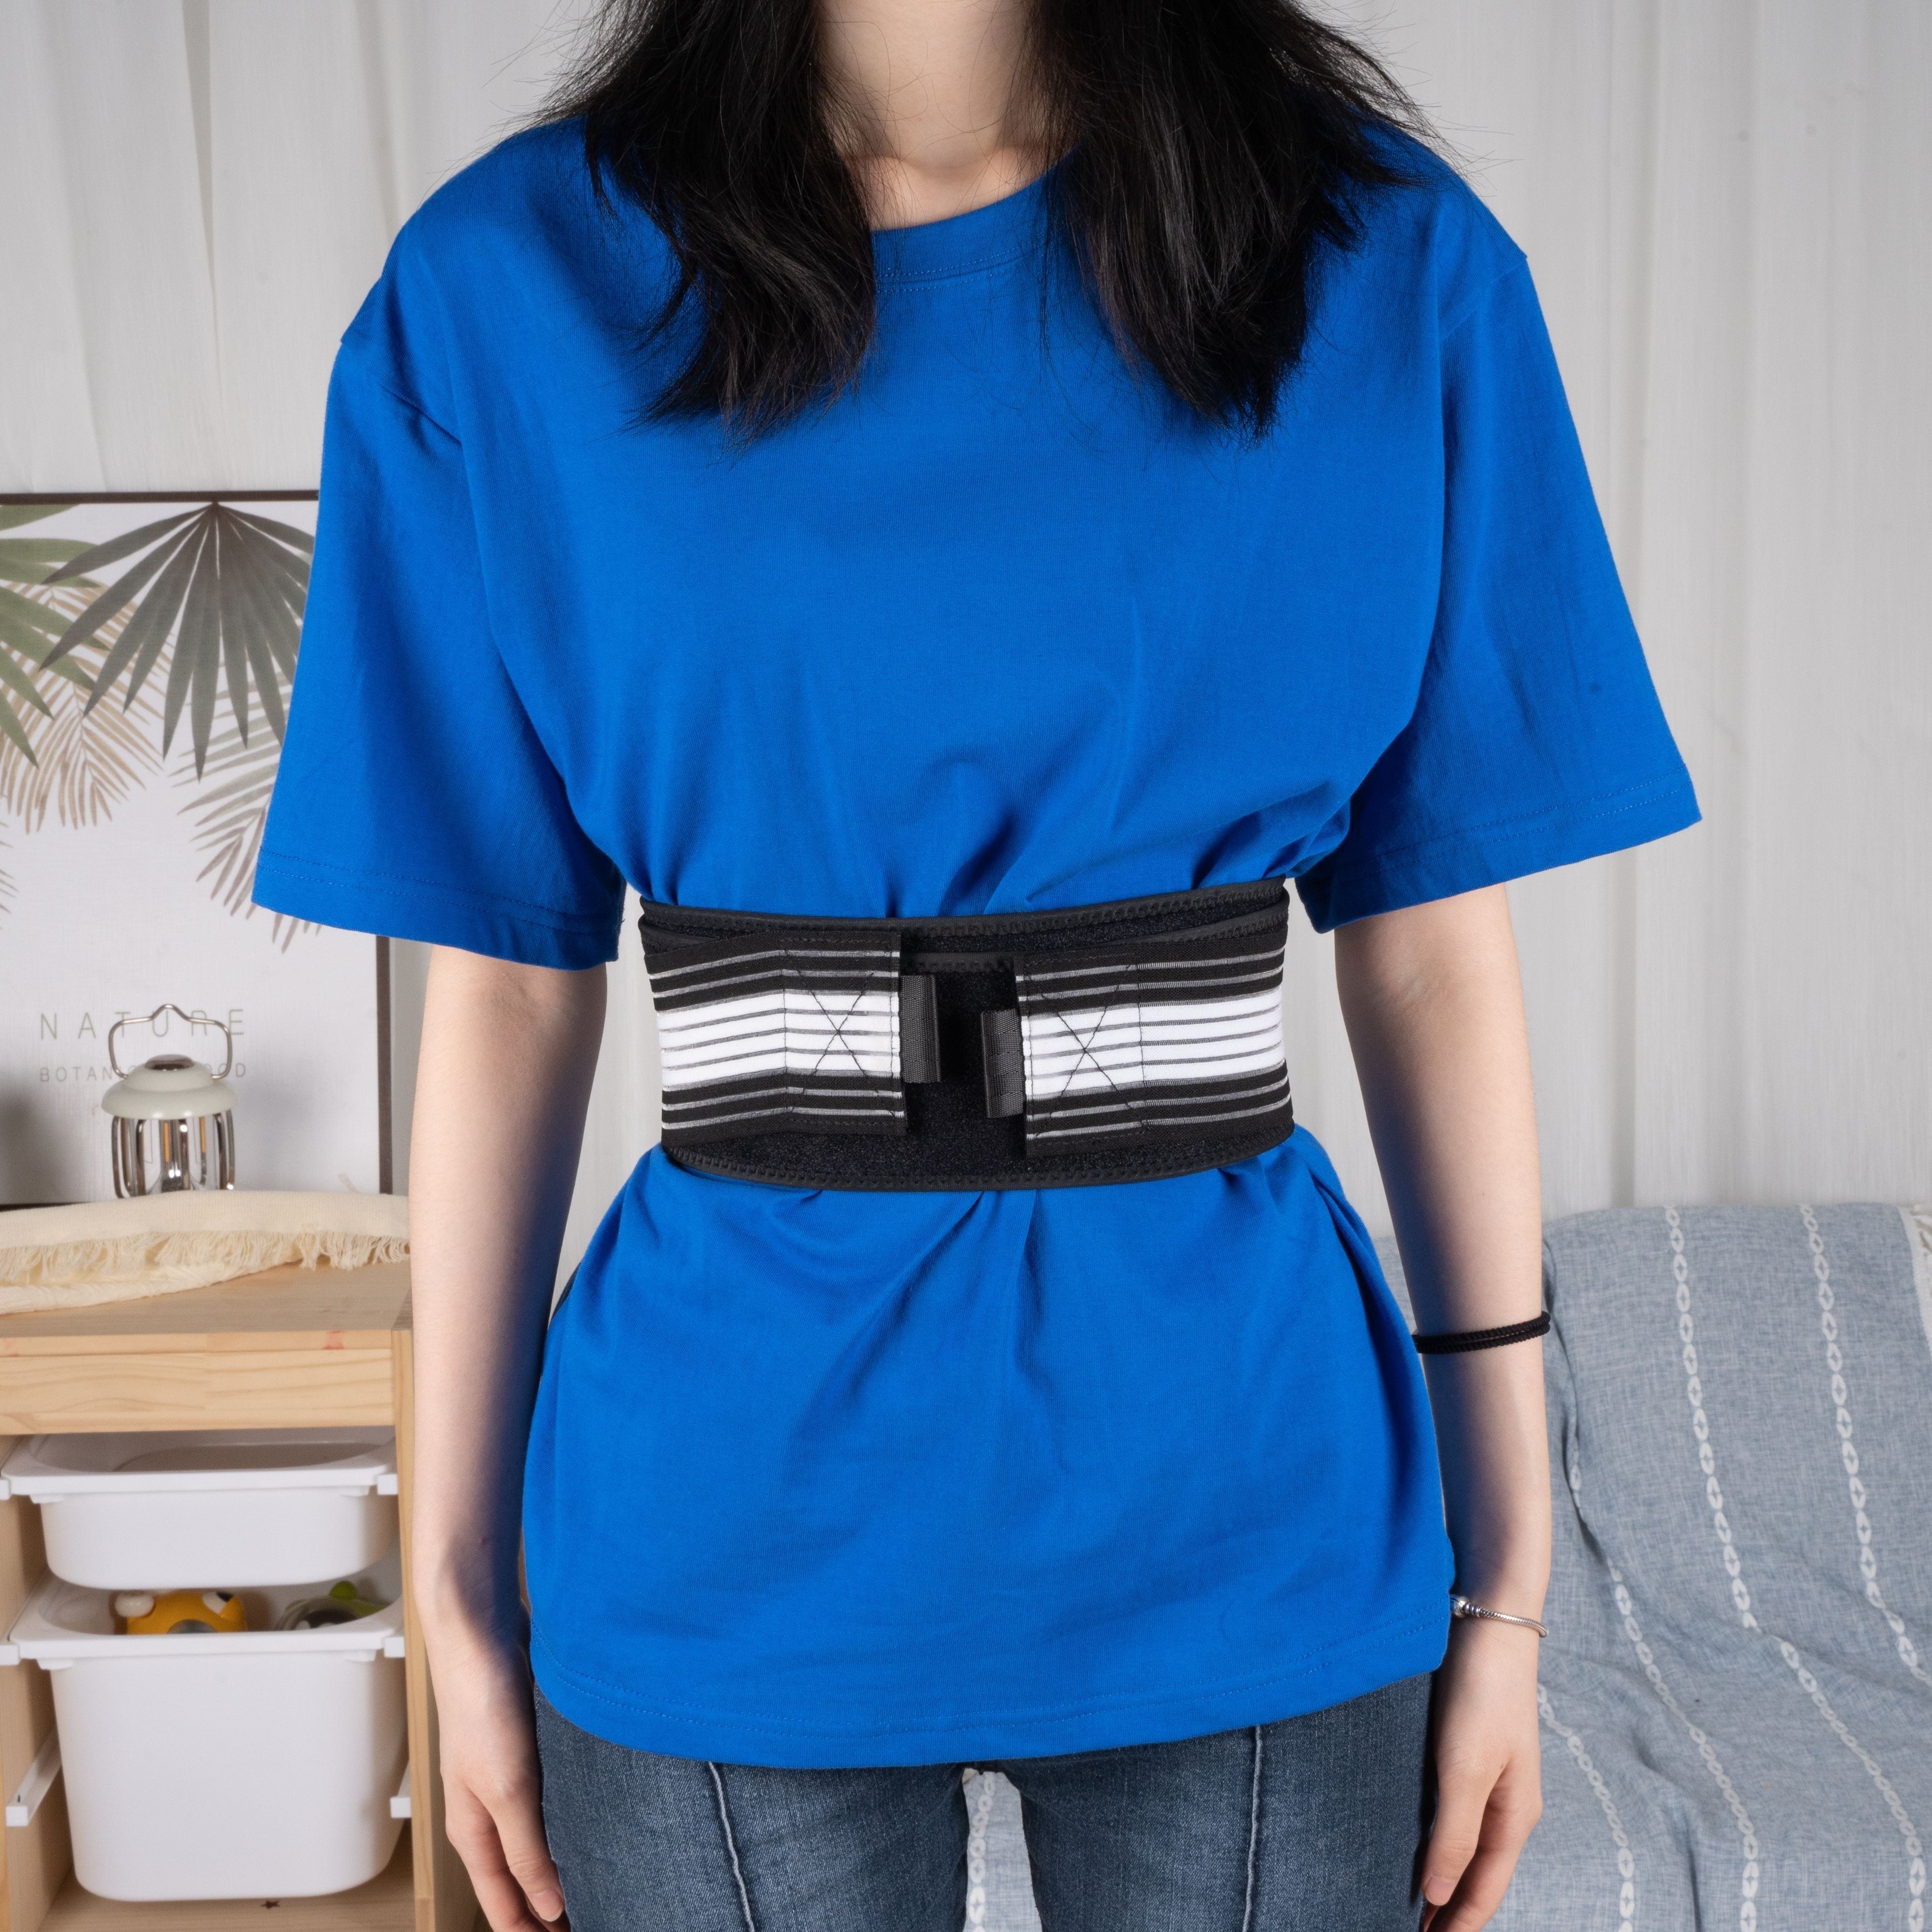 Comfortable Adjustable Hernia Belts Men Women Get Relief - Temu